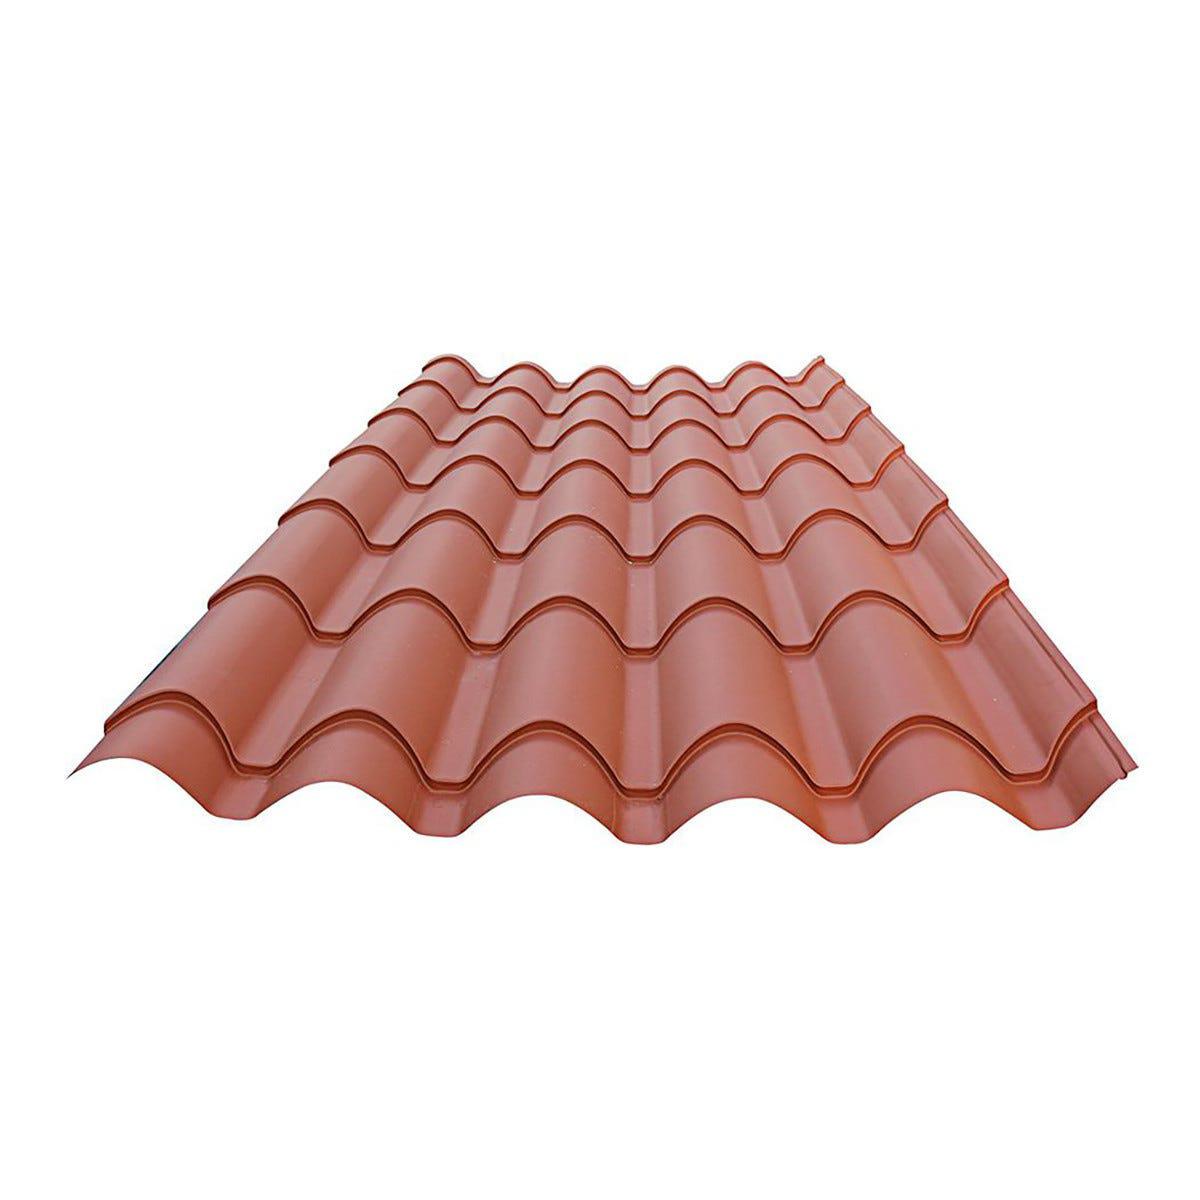 Lamiera ondulata finto coppo copertura tetto - FTMetalli